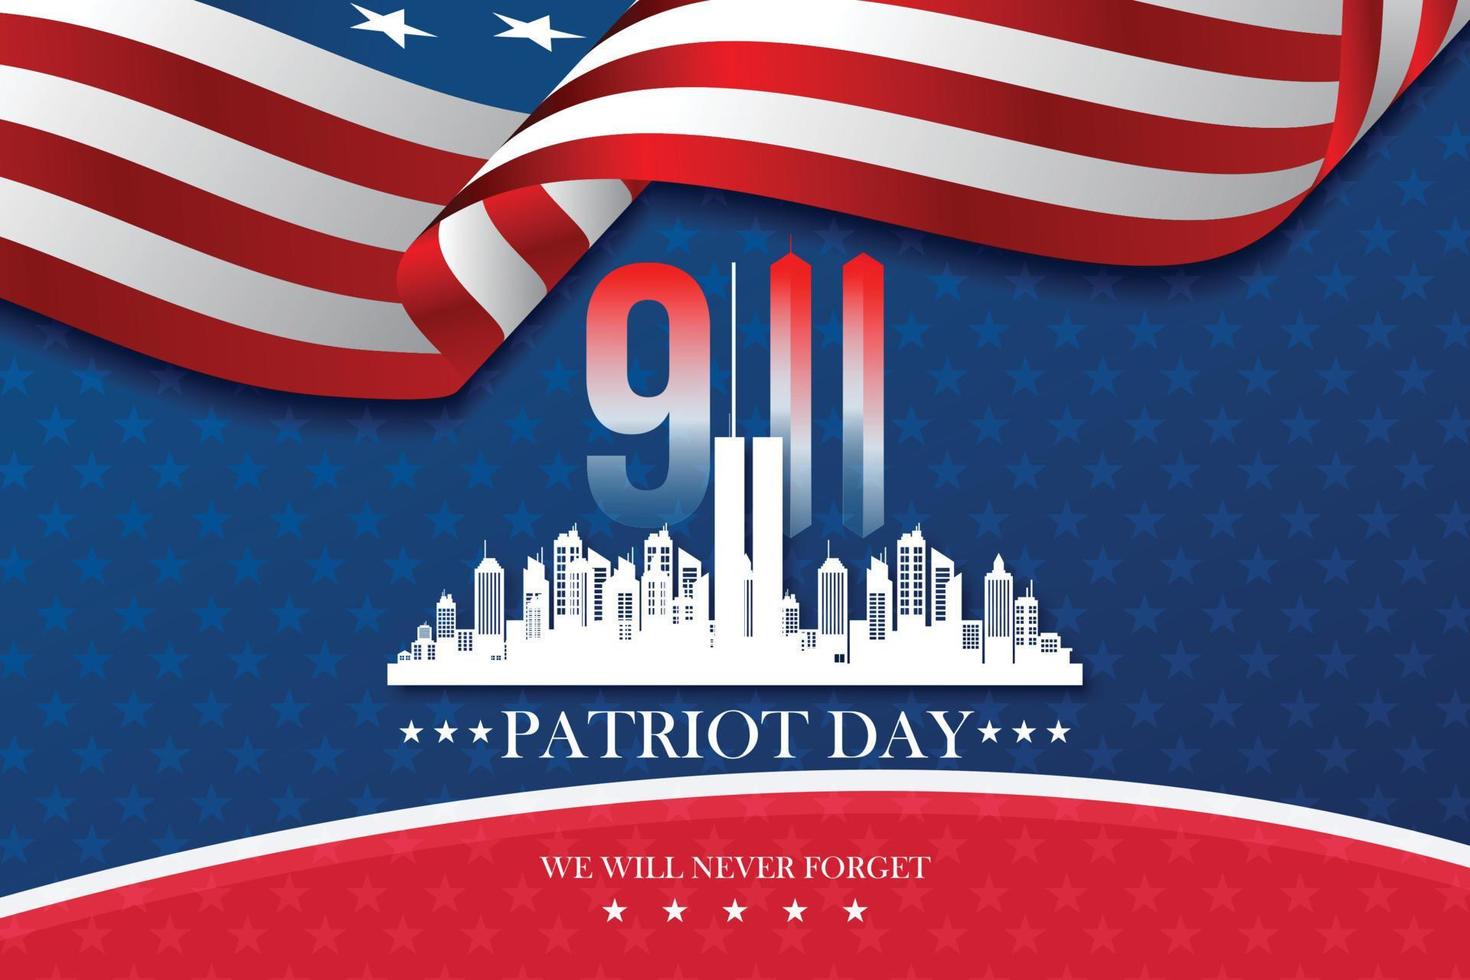 dia do patriota nos estados unidos. comemorar anual em 11 de setembro. nunca esqueceremos. nós lembramos. dia da memória. elementos americanos patrióticos. ilustração vetorial vetor